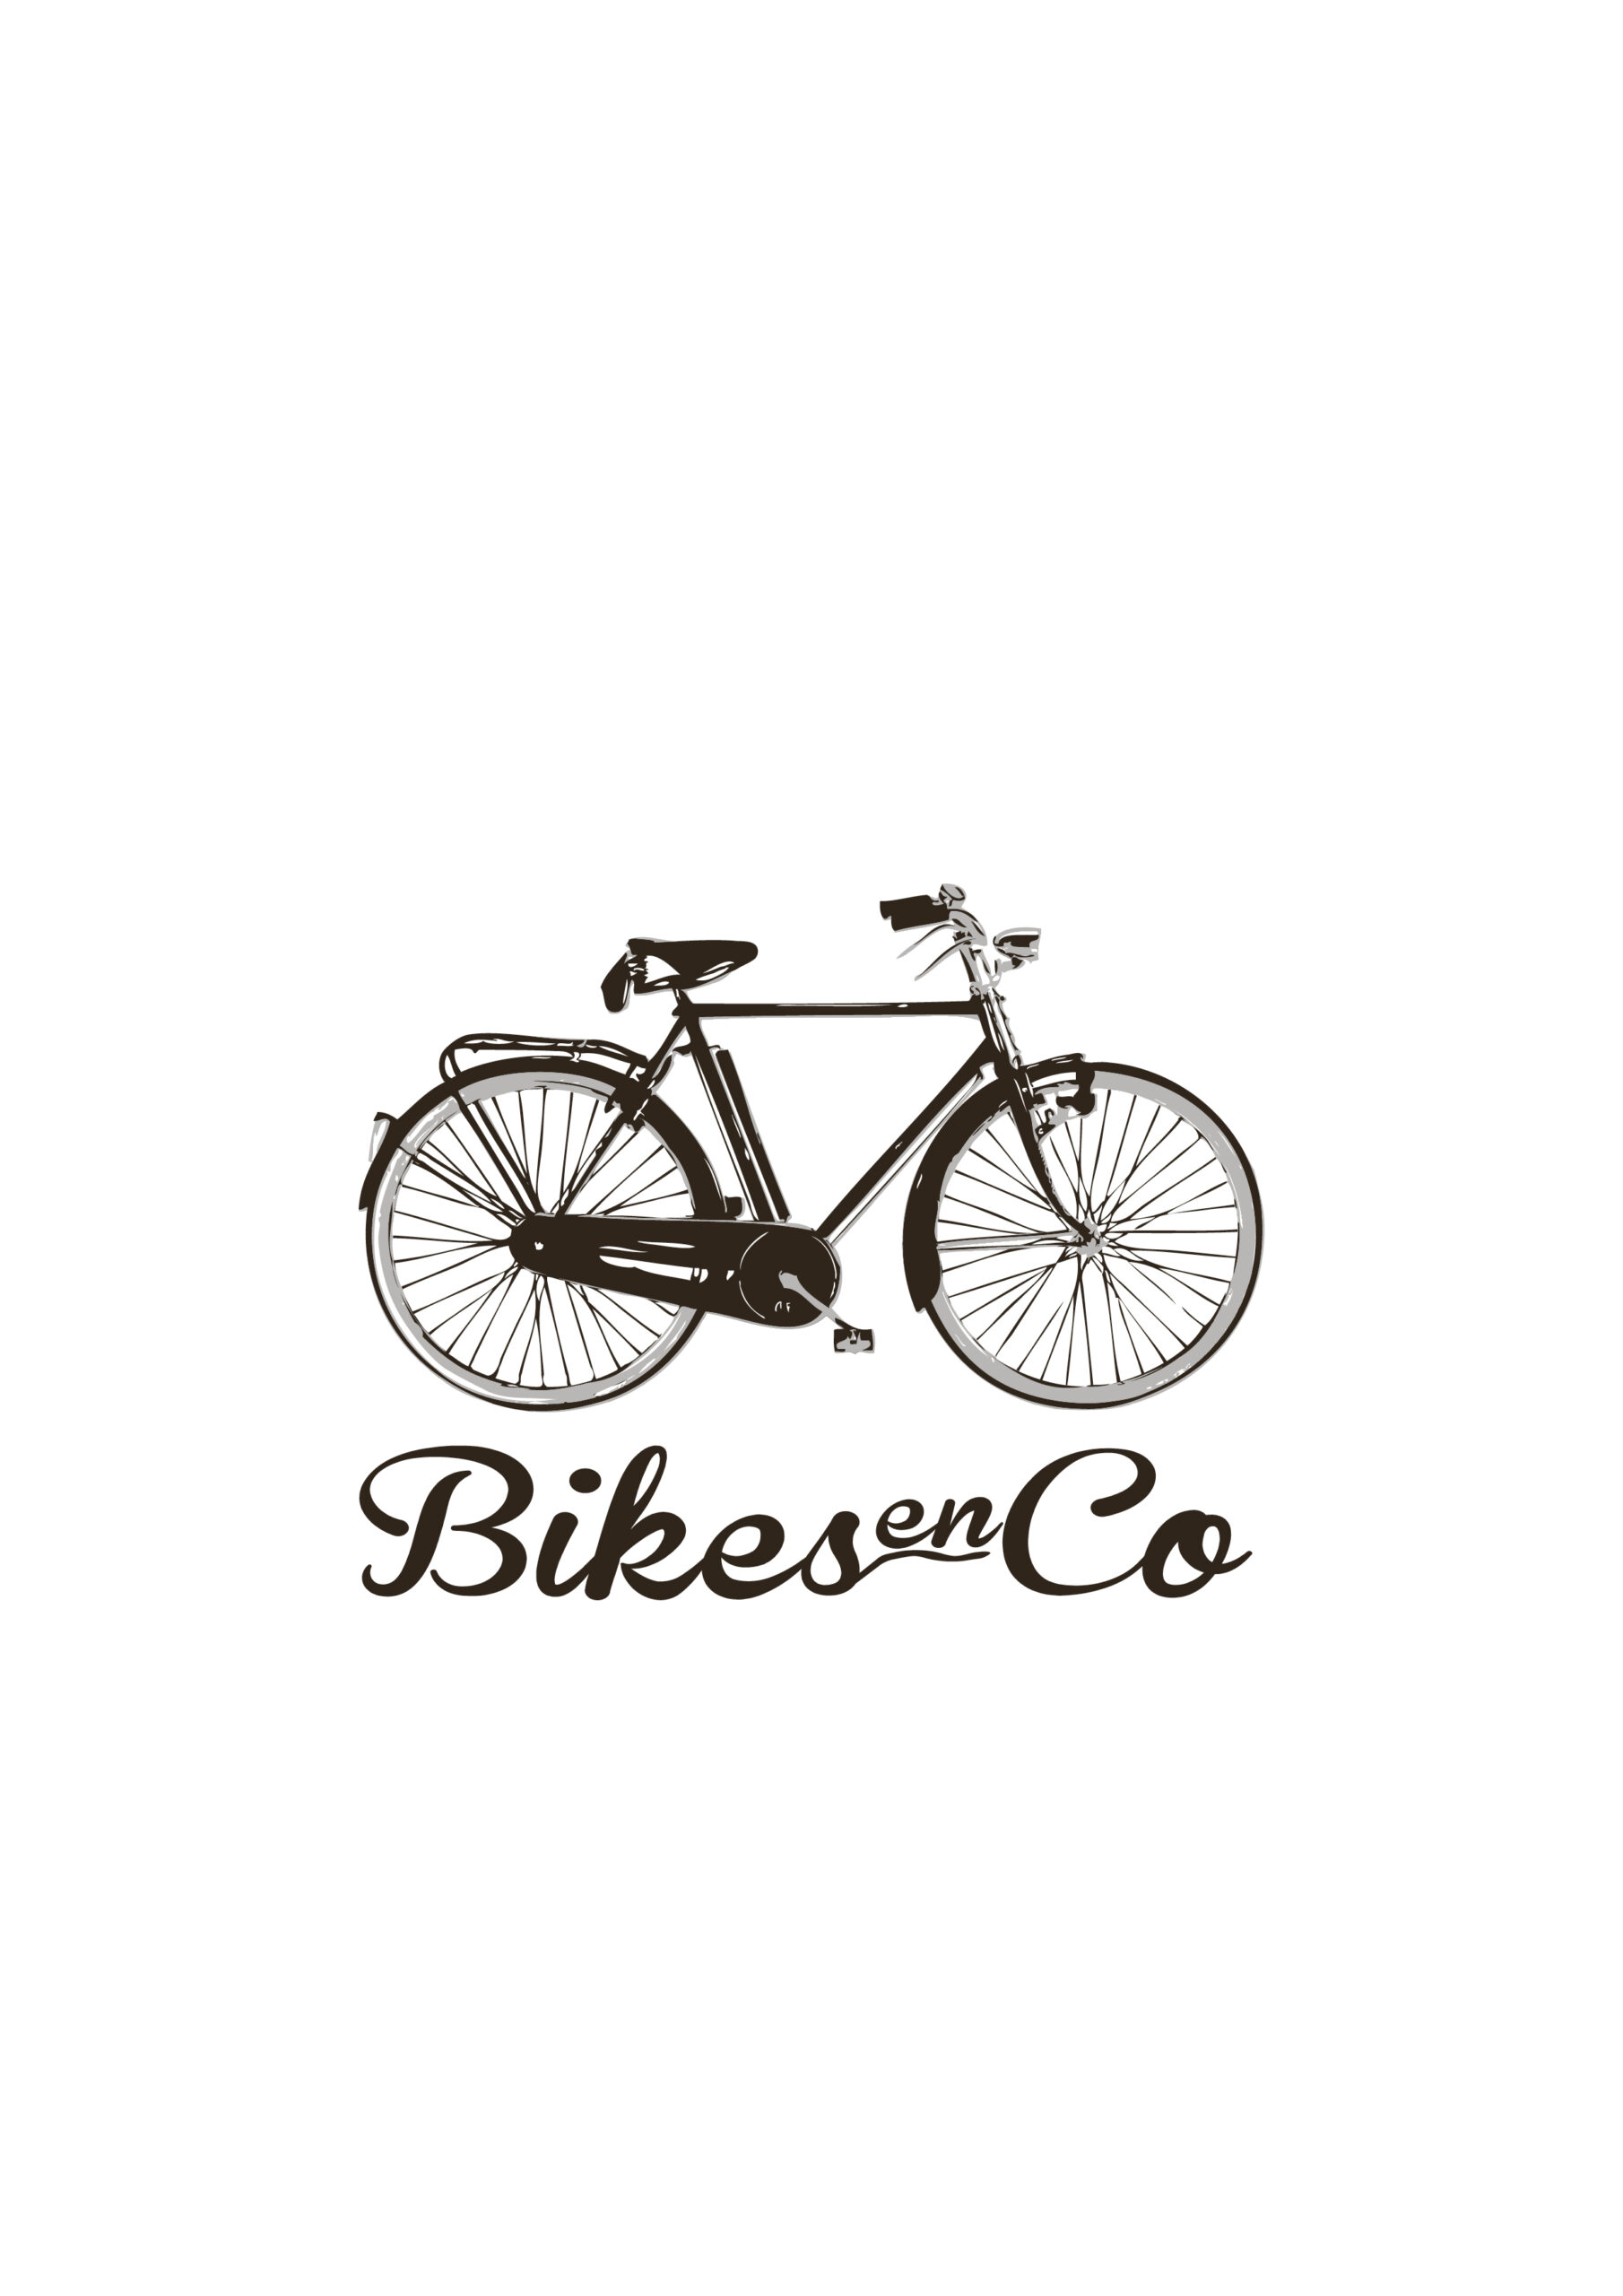 Logo Bikes en co